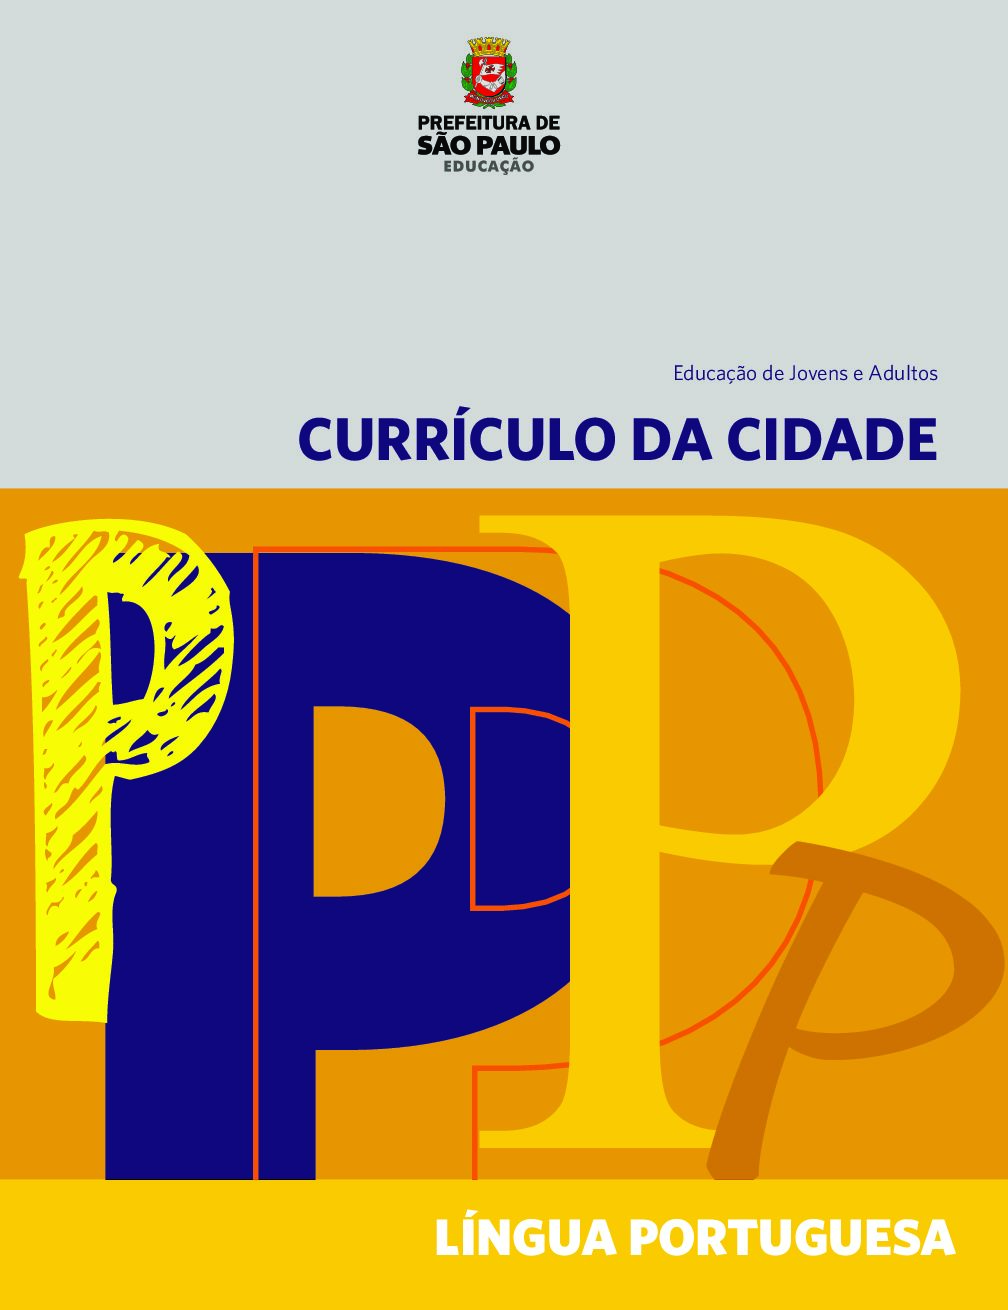 Currículo da Cidade para a Educação de Jovens e Adultos: componente curricular Língua Portuguesa.